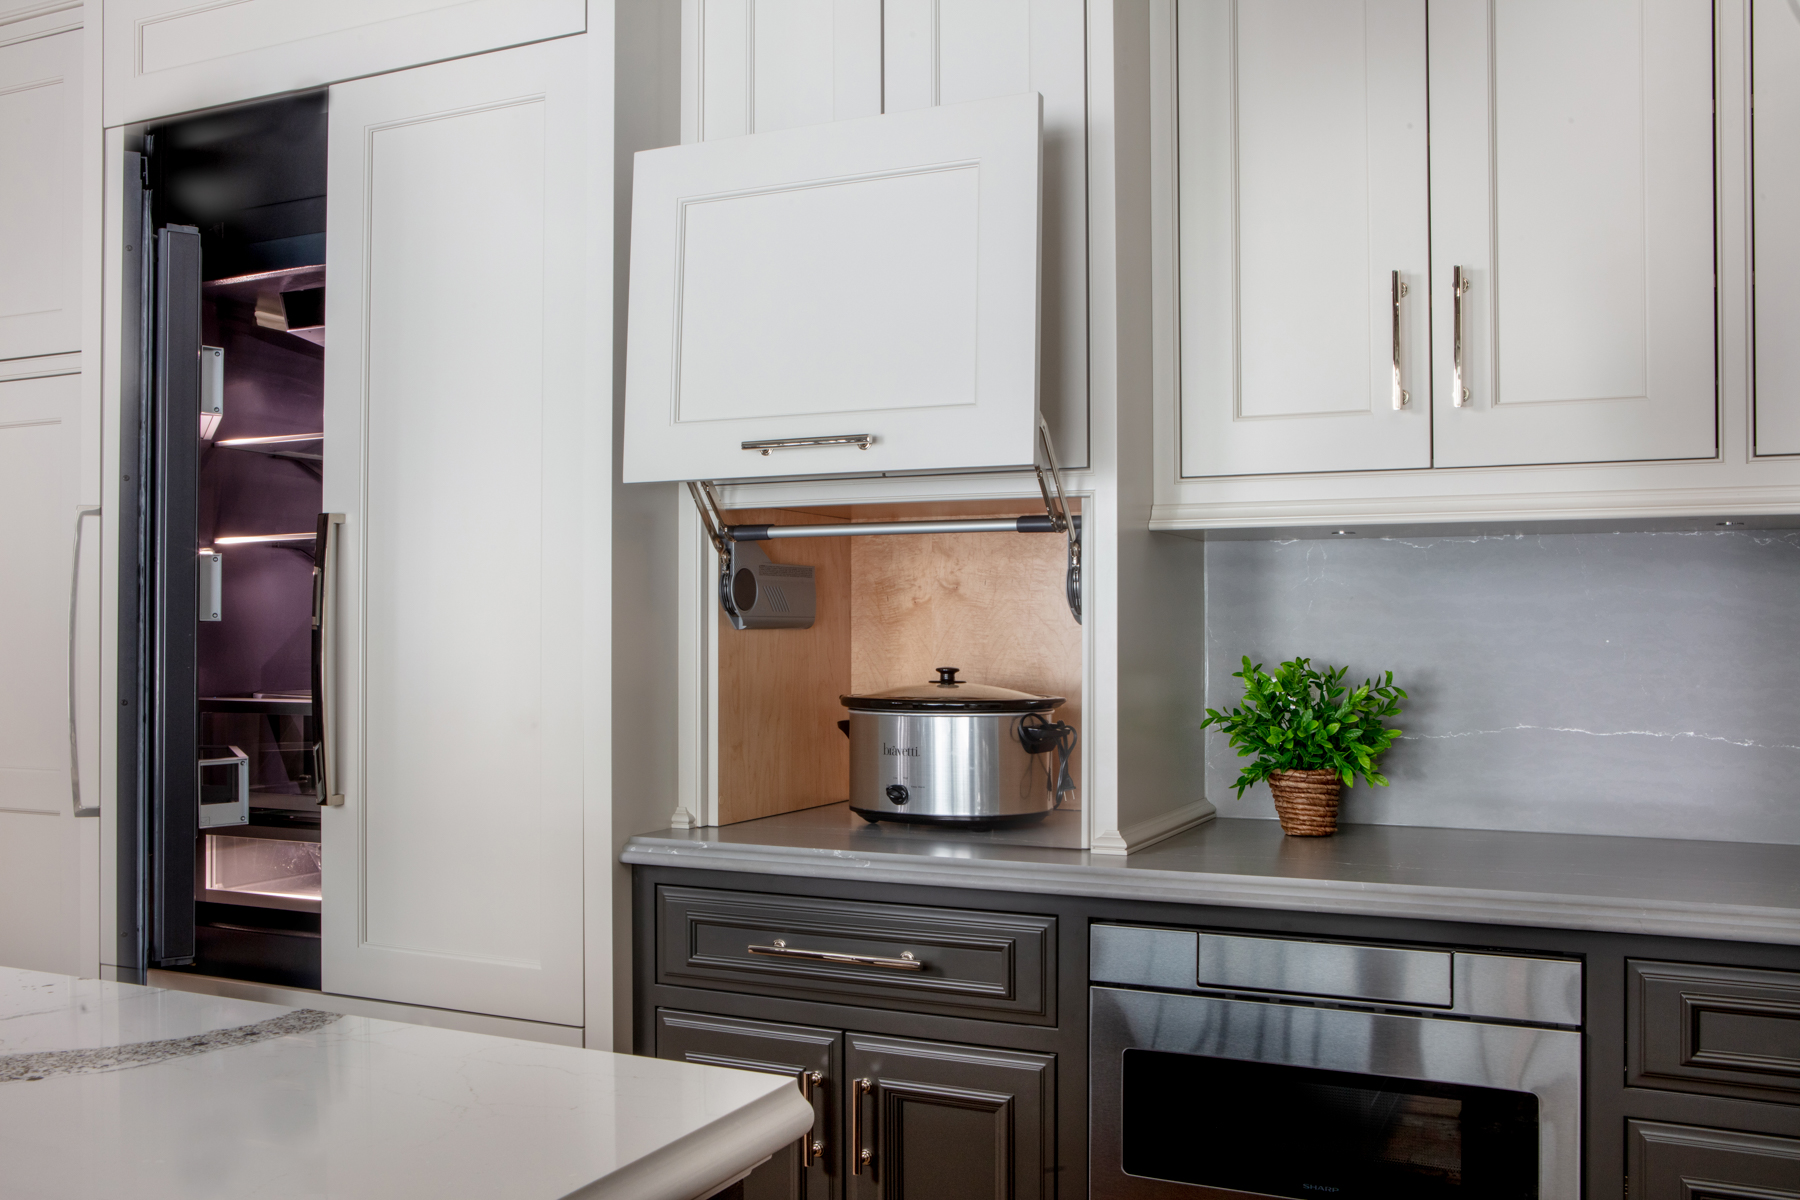 10 Types of Storage You Need in Your Next Kitchen | Chervin Kitchen & Bath | Lee Valley Kitchen A